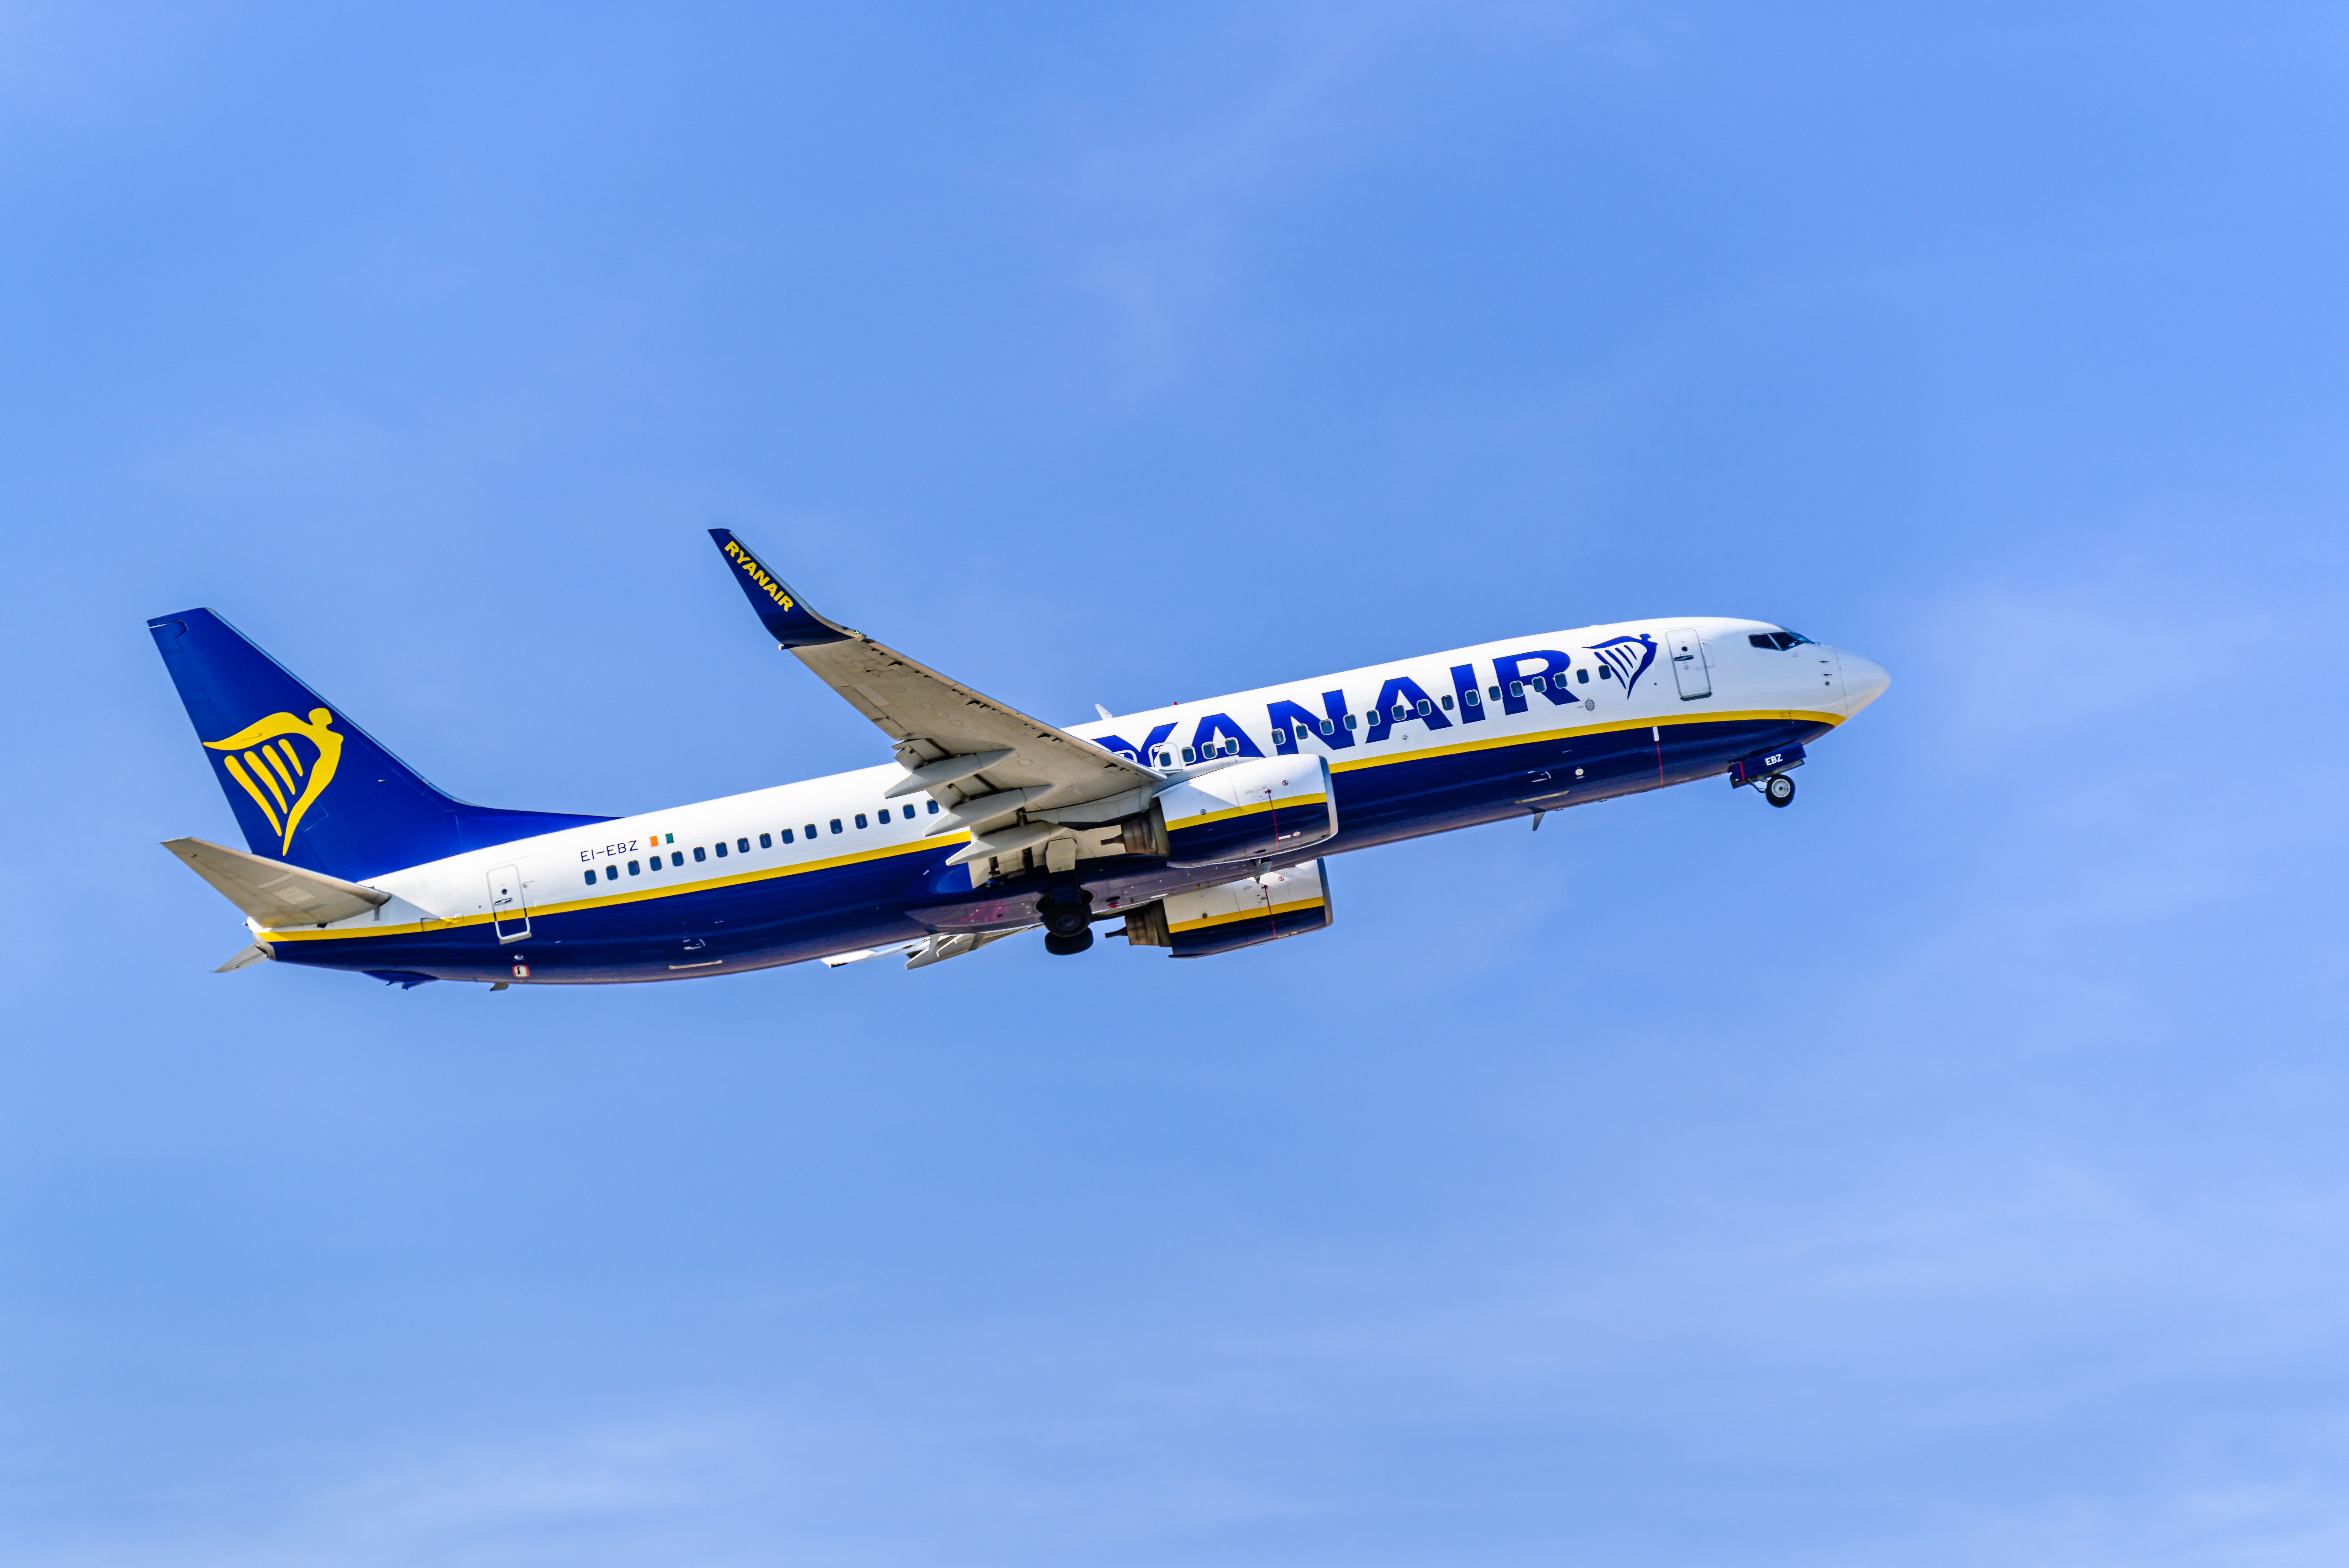 A Ryanair Boeing 737-800 flying in the sky.